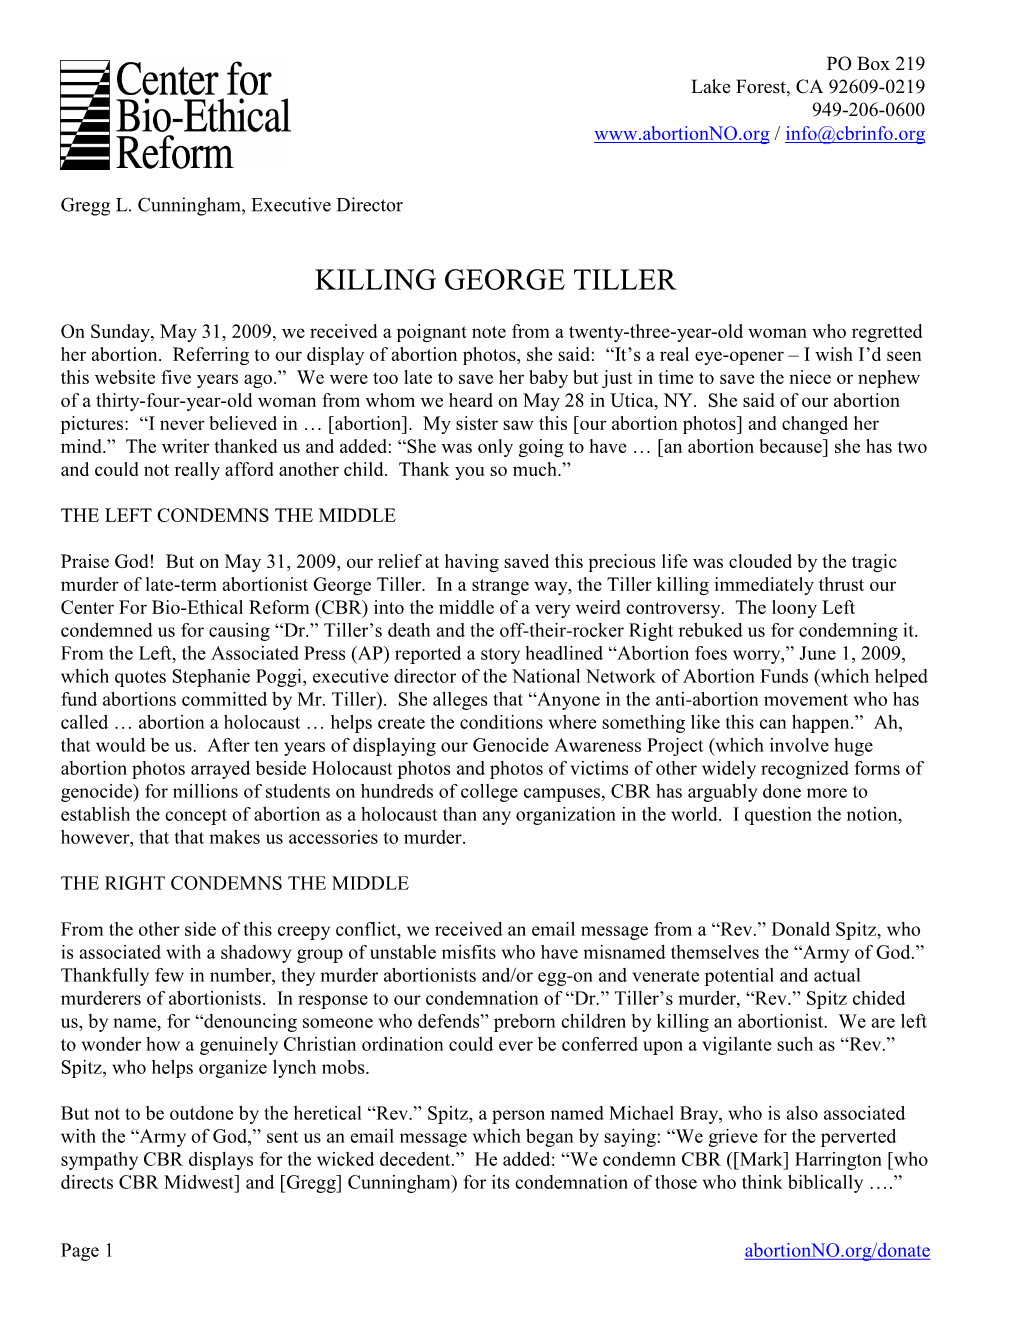 Killing George Tiller